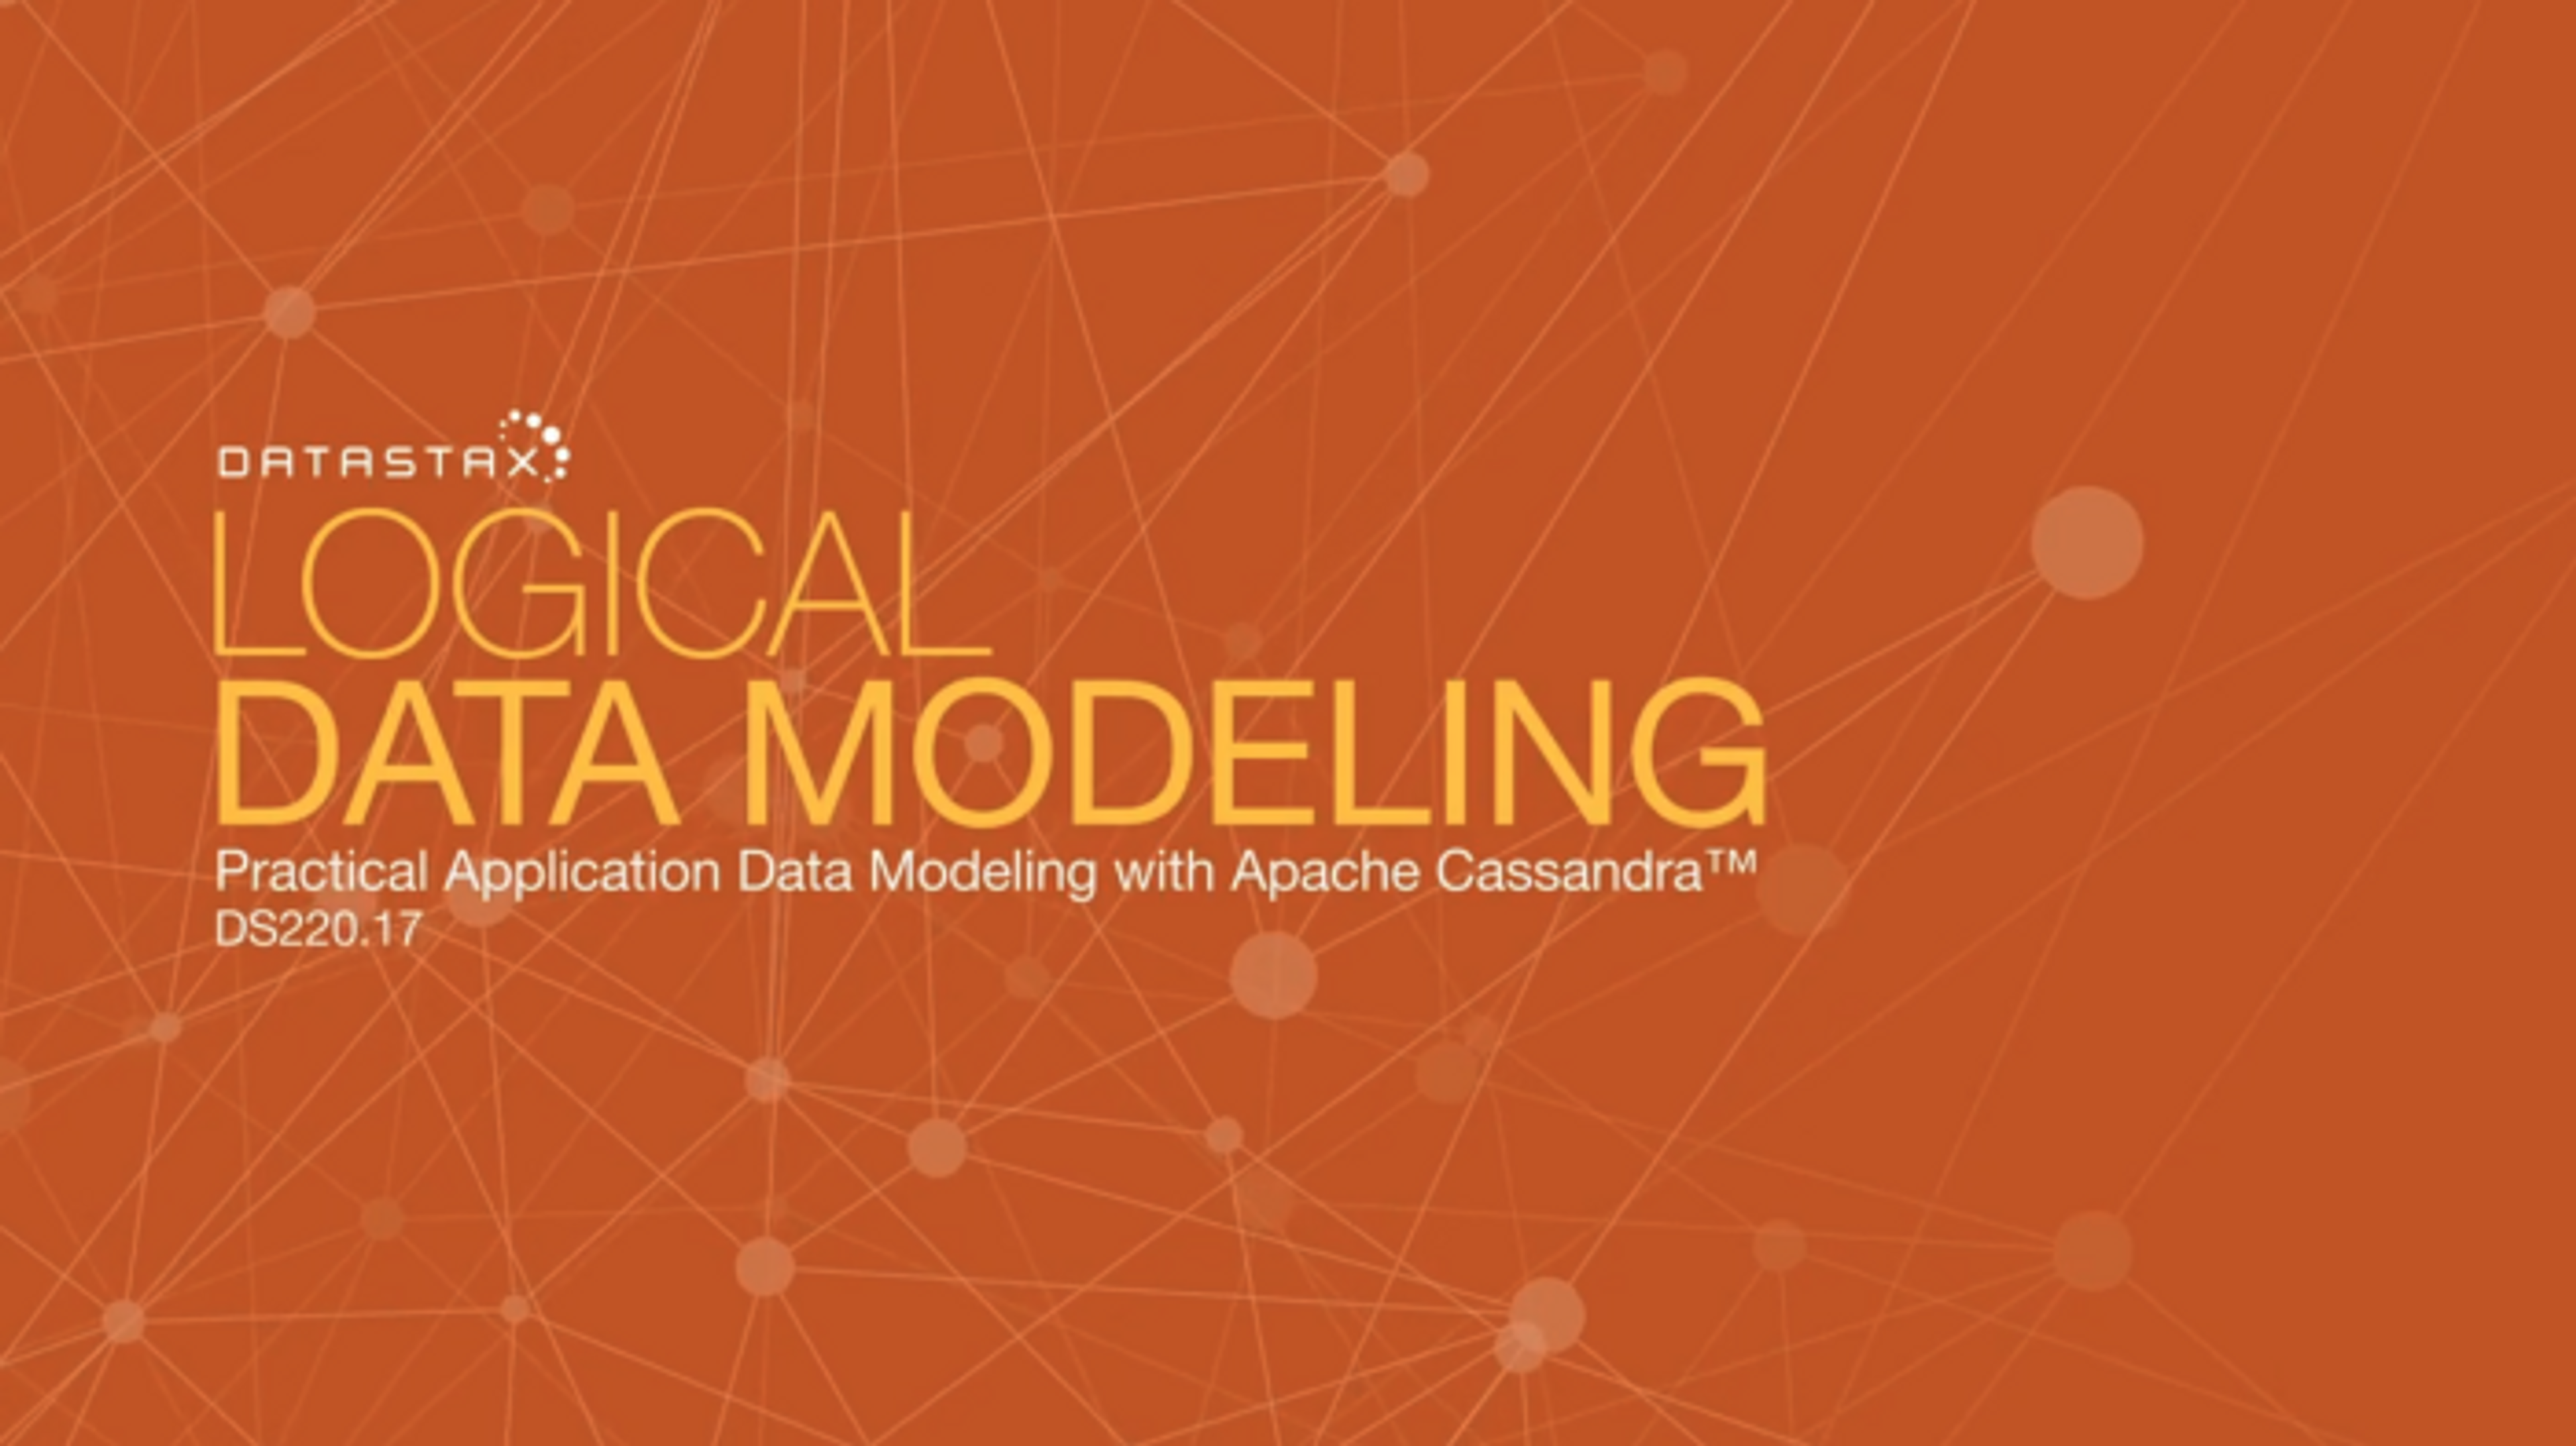 Logical Data Modeling